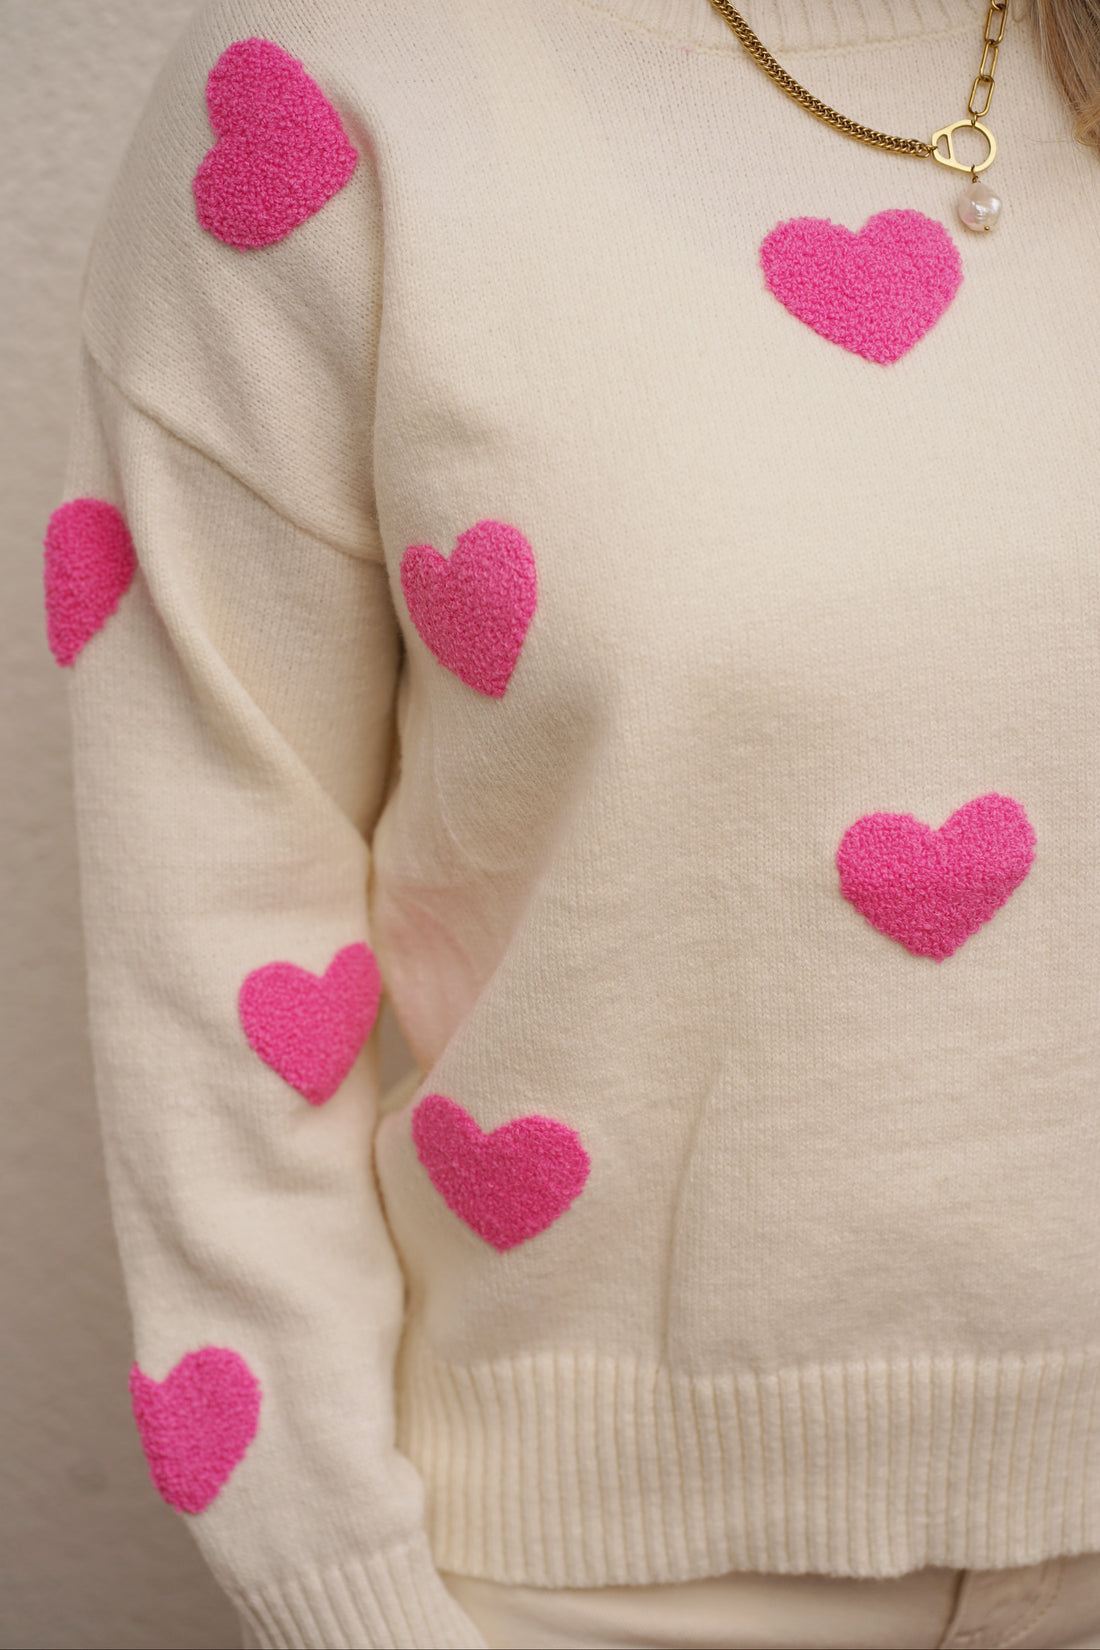 Pullover mit Herzen